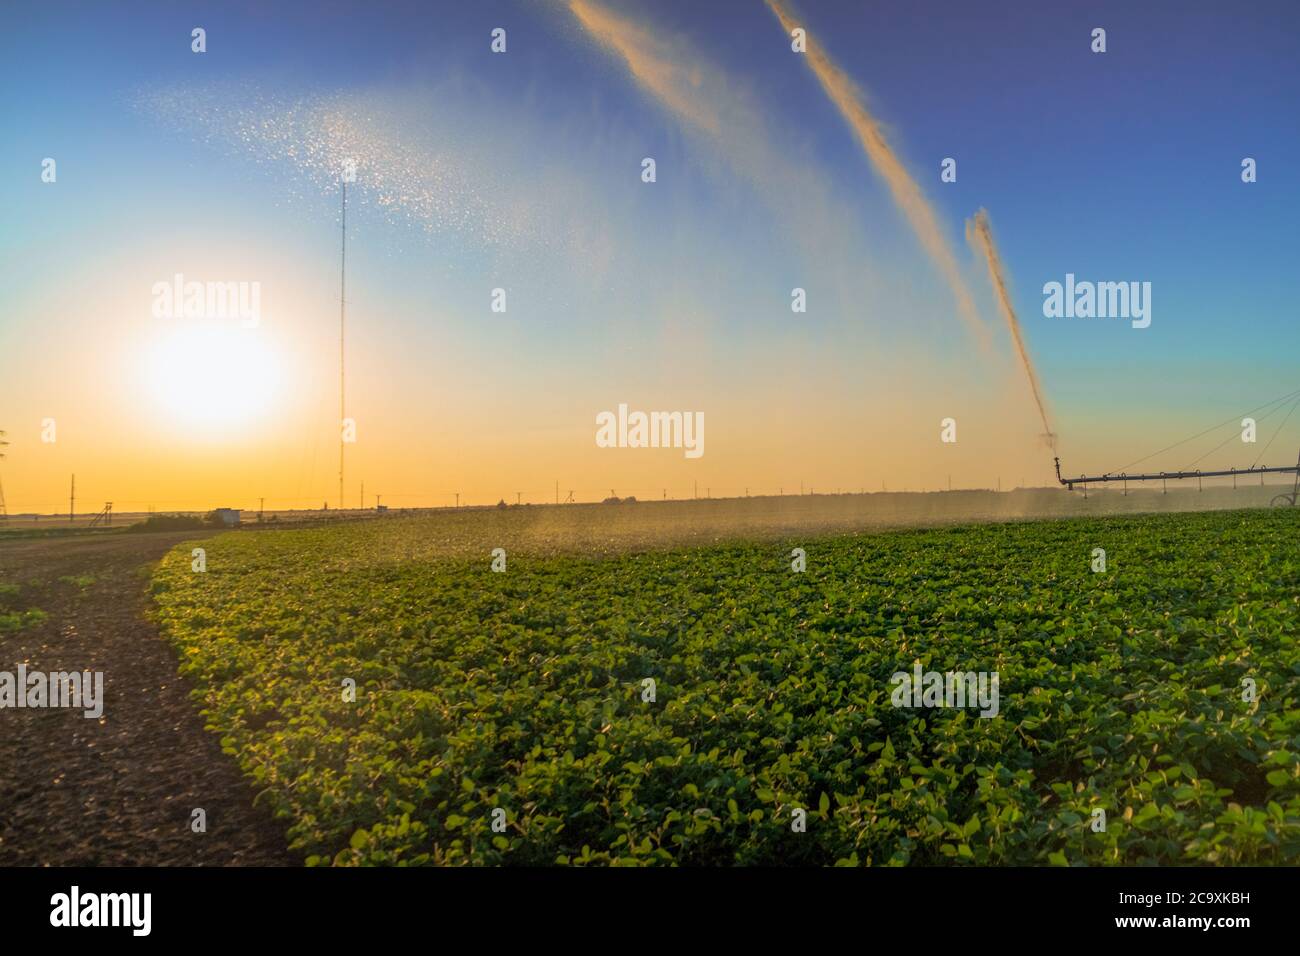 impianto di irrigazione pistole a pioggia irrigatore su campo agricolo.irrigazione di piante Foto Stock